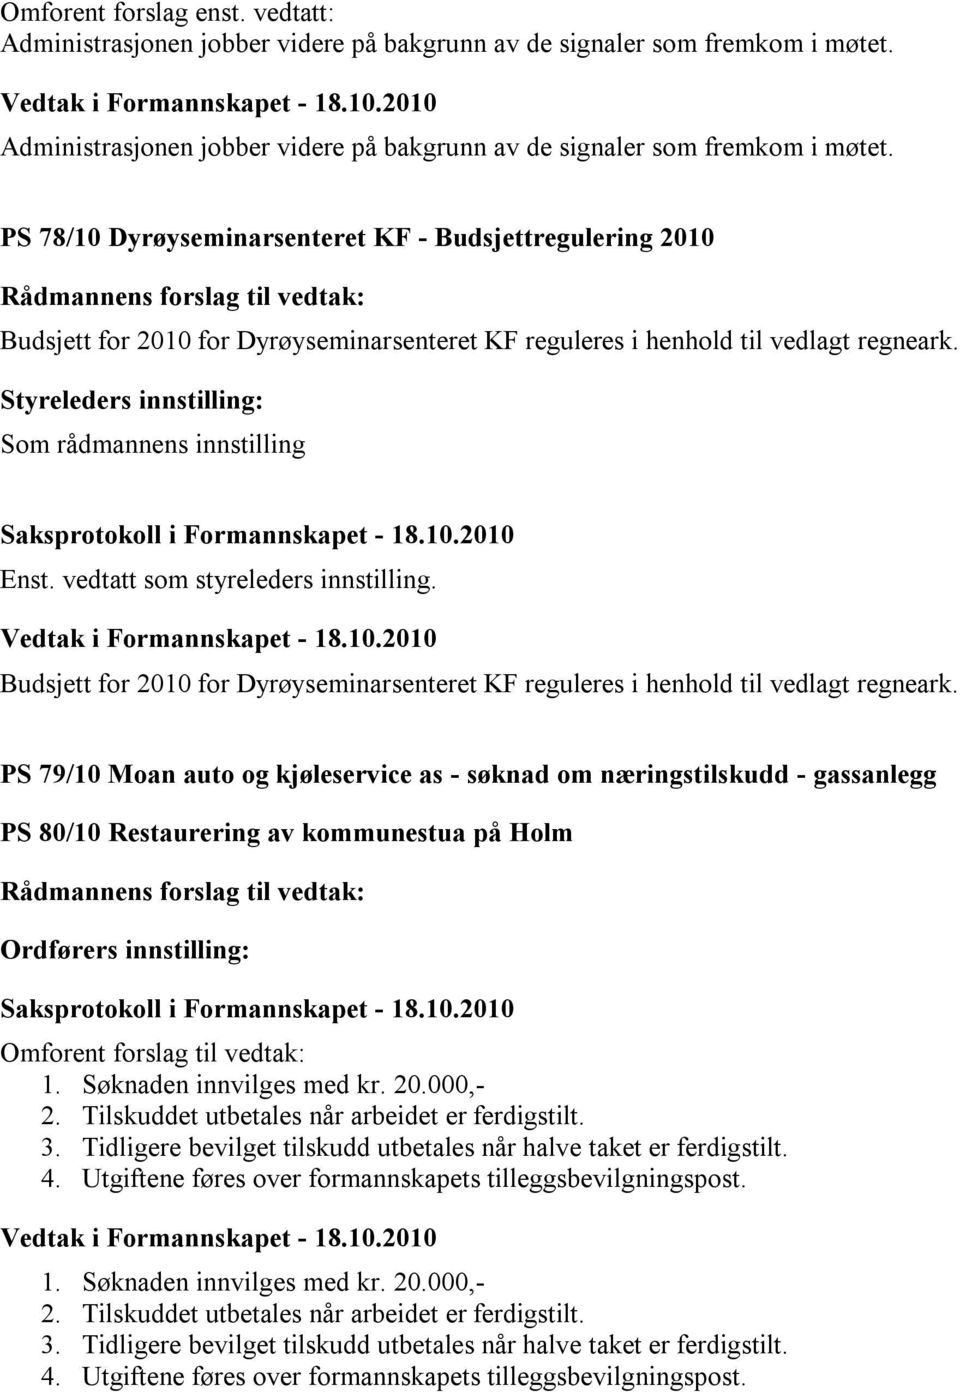 PS 78/10 Dyrøyseminarsenteret KF - Budsjettregulering 2010 Budsjett for 2010 for Dyrøyseminarsenteret KF reguleres i henhold til vedlagt regneark.